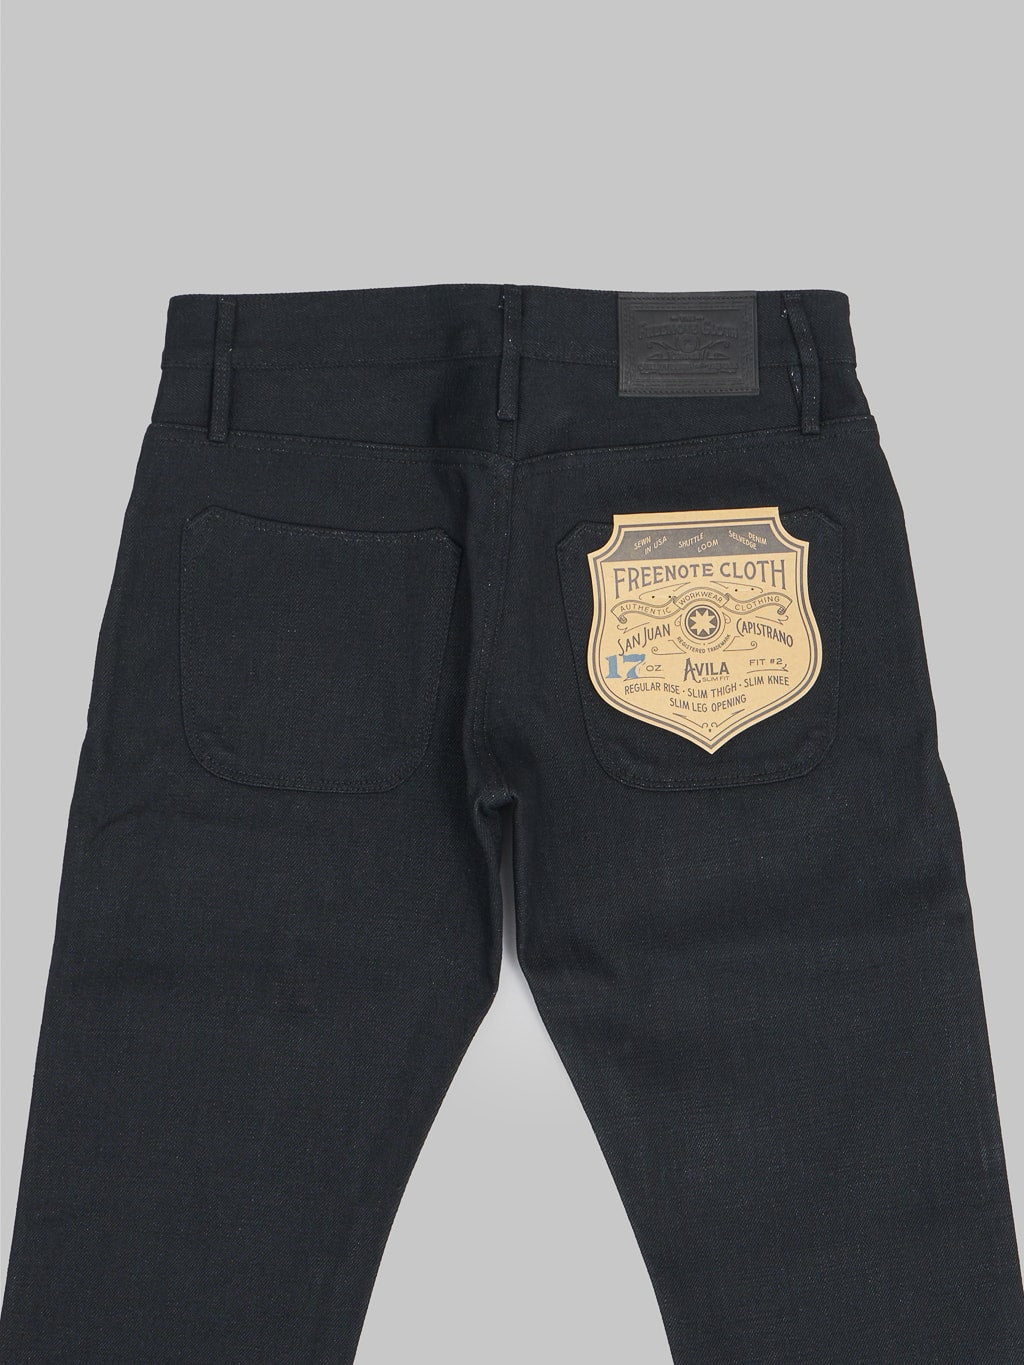 Freenote Cloth Avila 17oz Black Denim Slim Taper Jeans back details